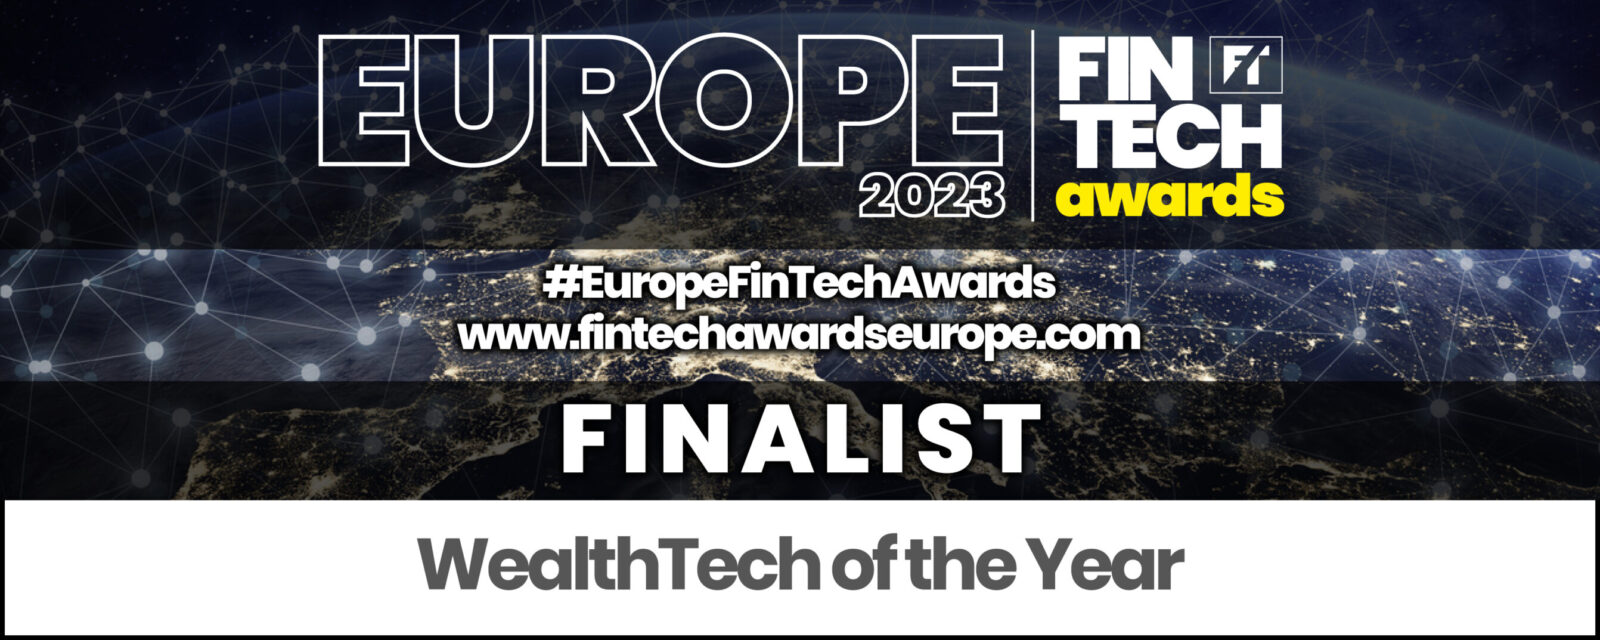 EUROPE FINTECH 2023 finalist graphics – solid_footer_WealthTech